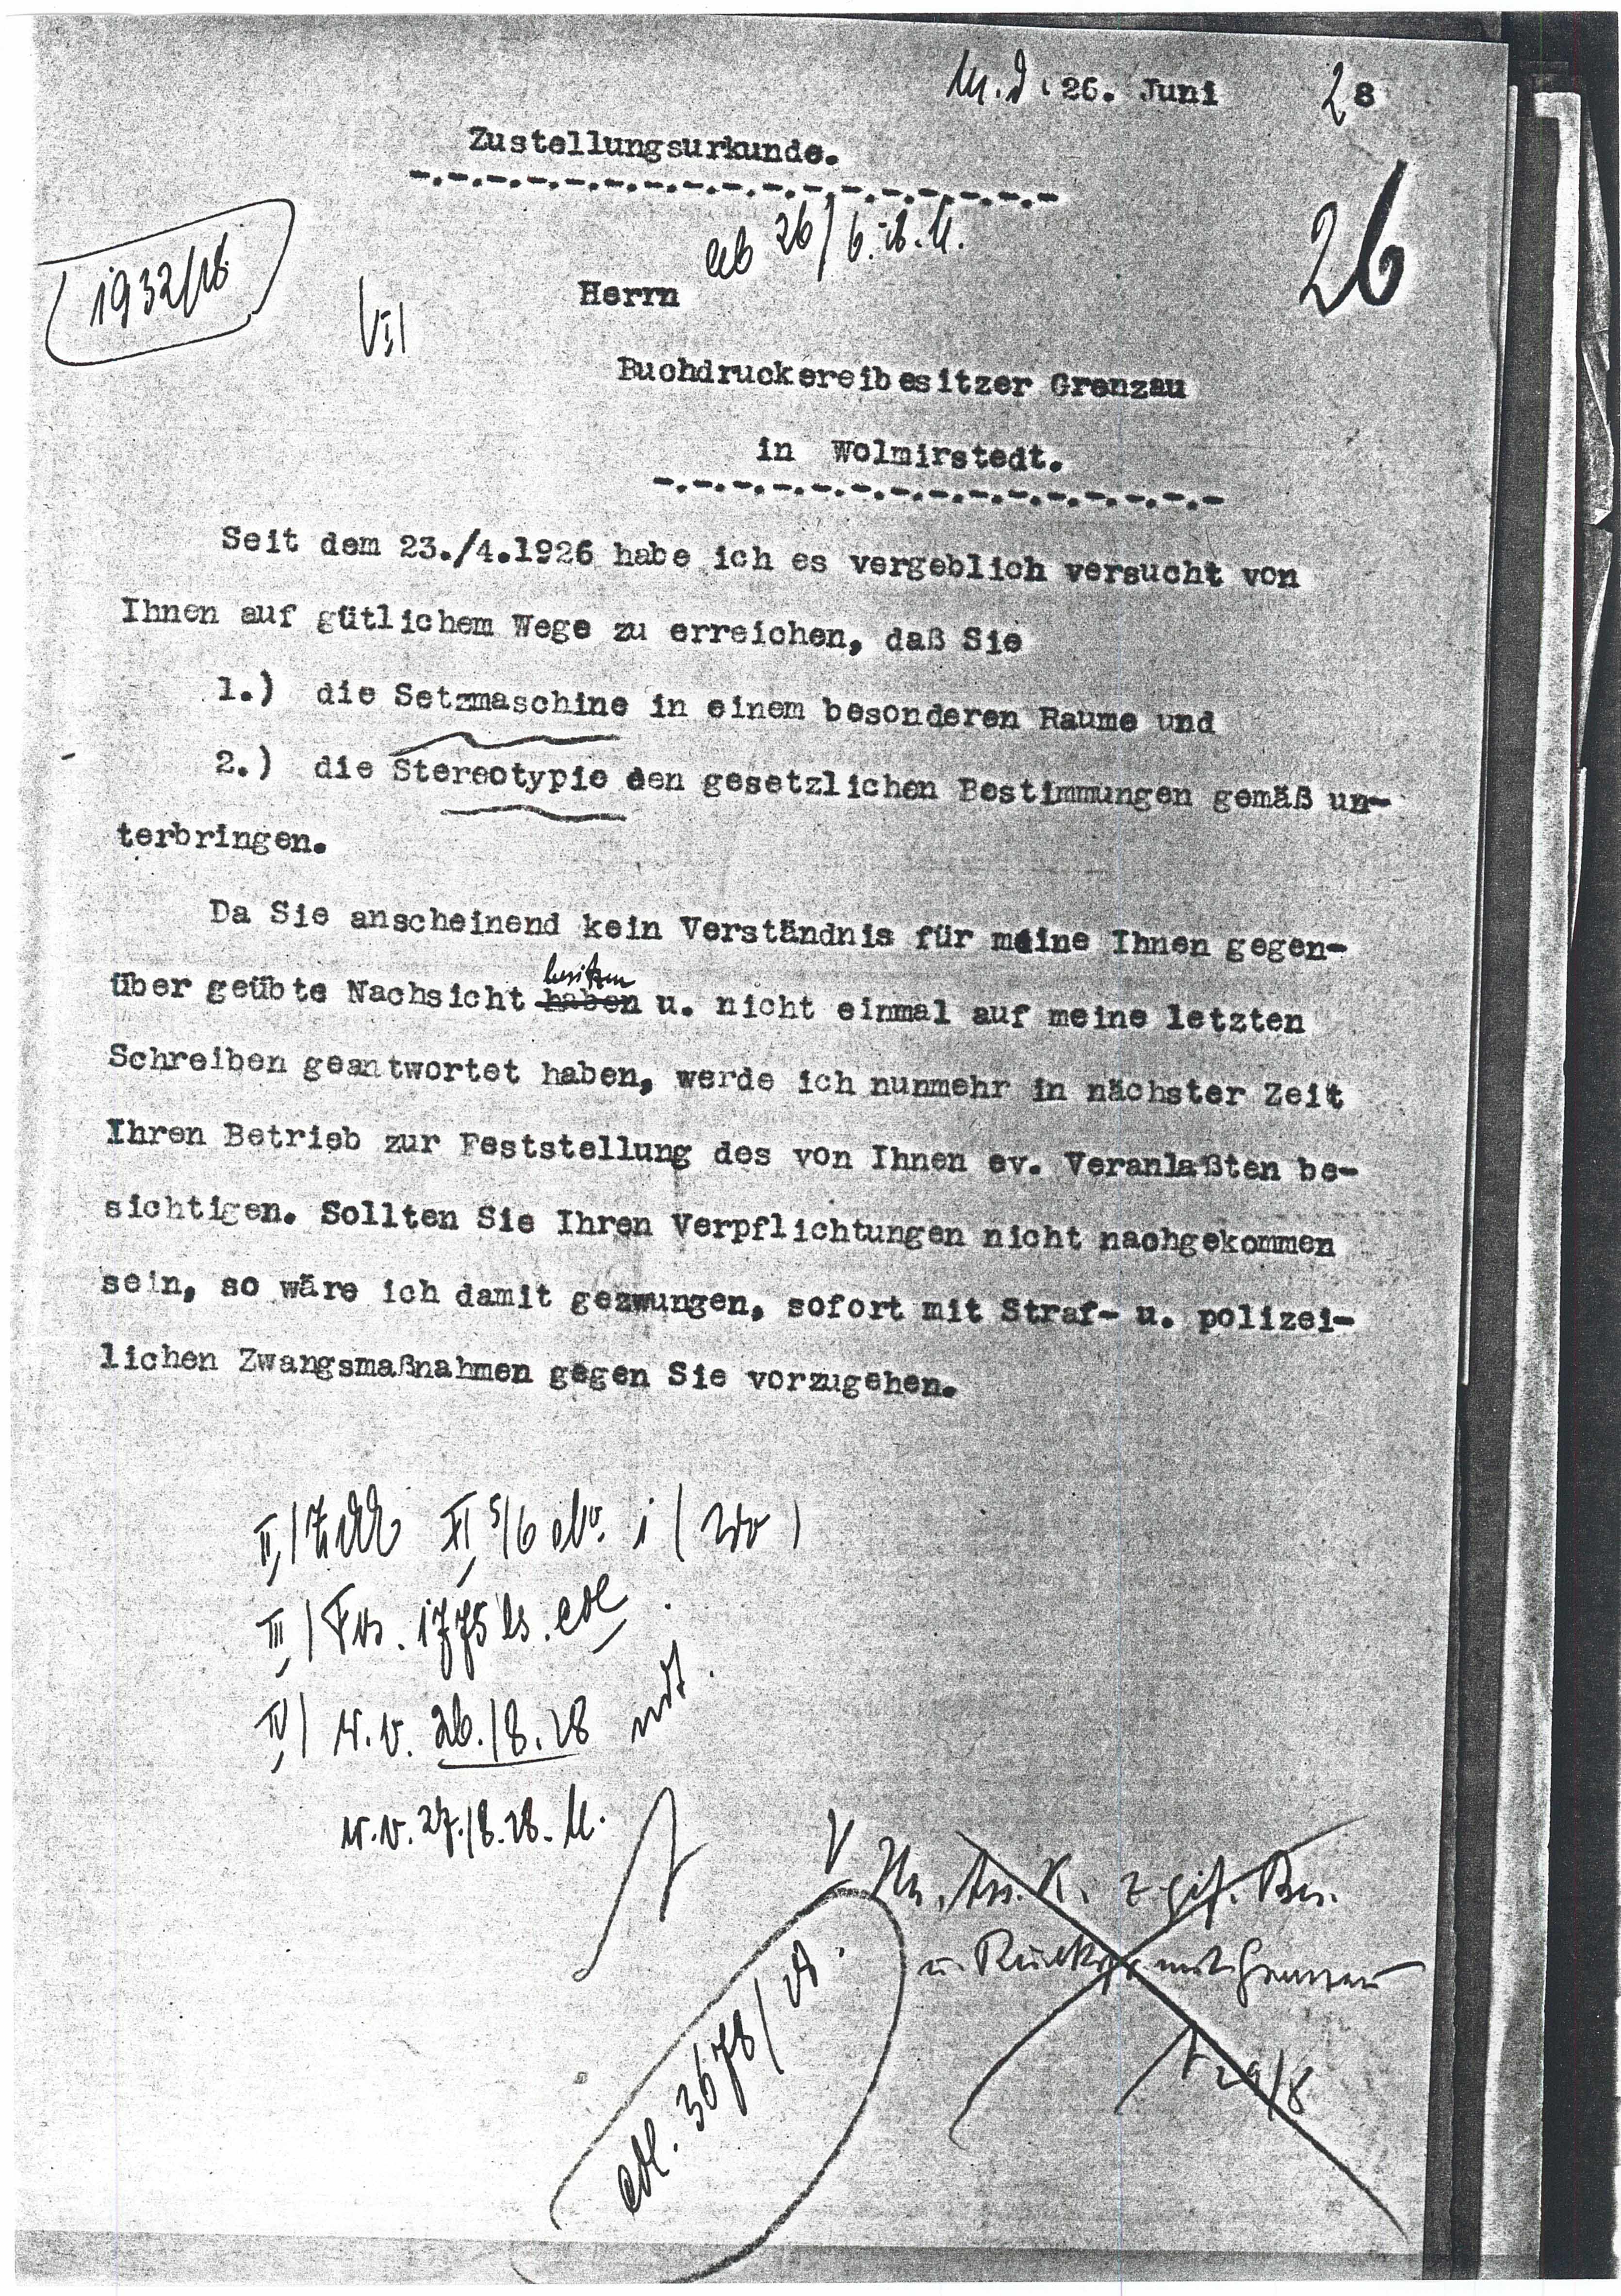 Schreiben Druckerei Grenzau - Umsetzung v. Maschinen - 26.06.1928 (Museum Wolmirstedt RR-F)